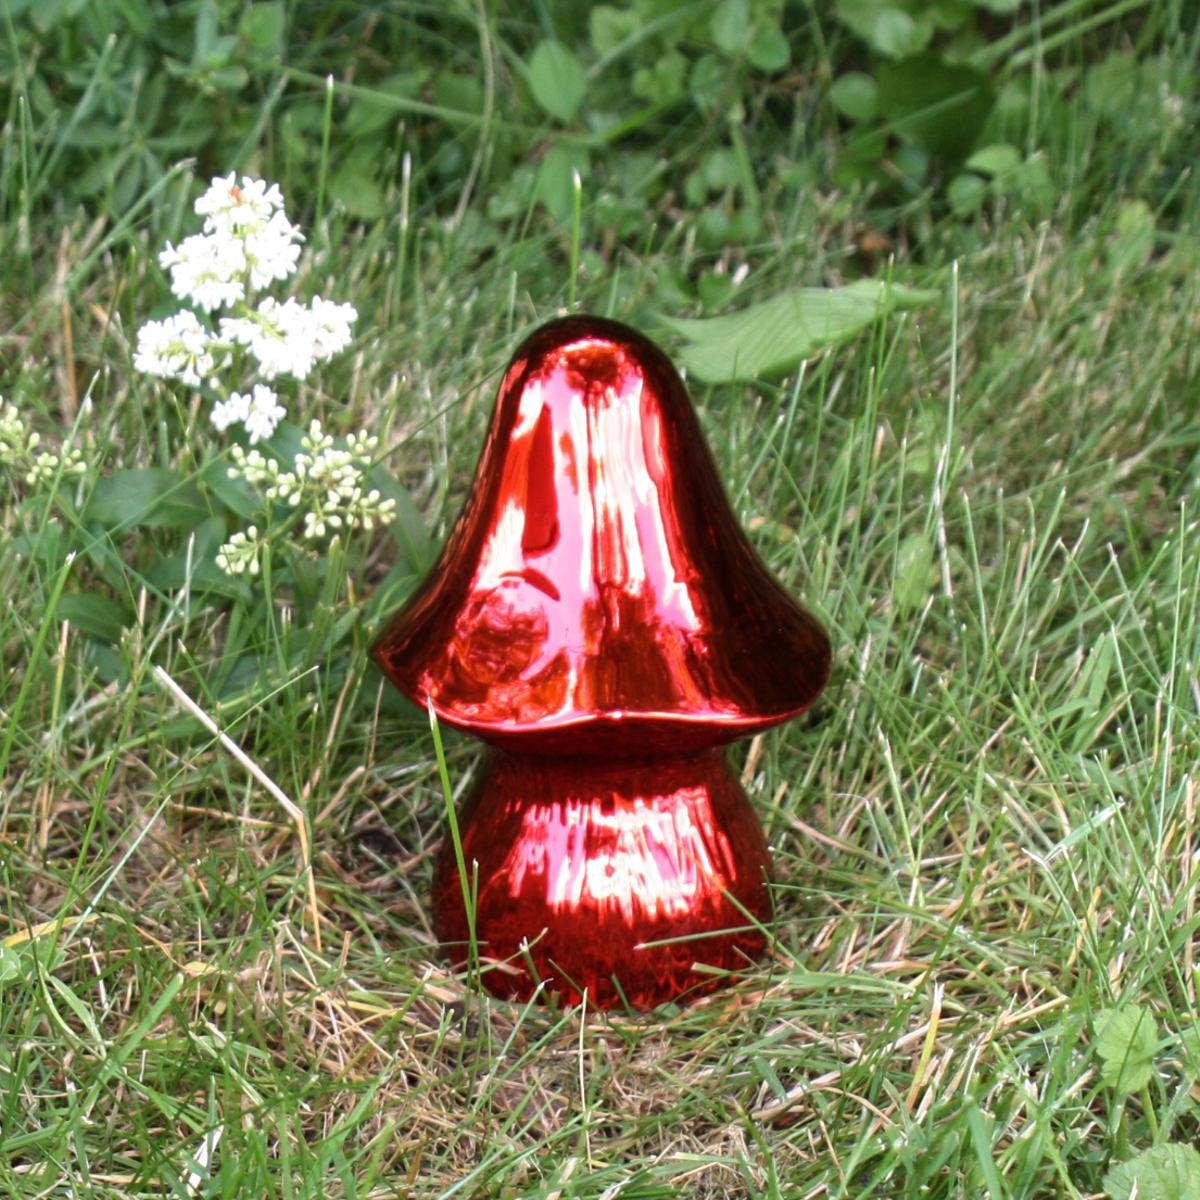 Dekofigur cm 15 440s 440s rot ca H glänzend Keramik-Pilz